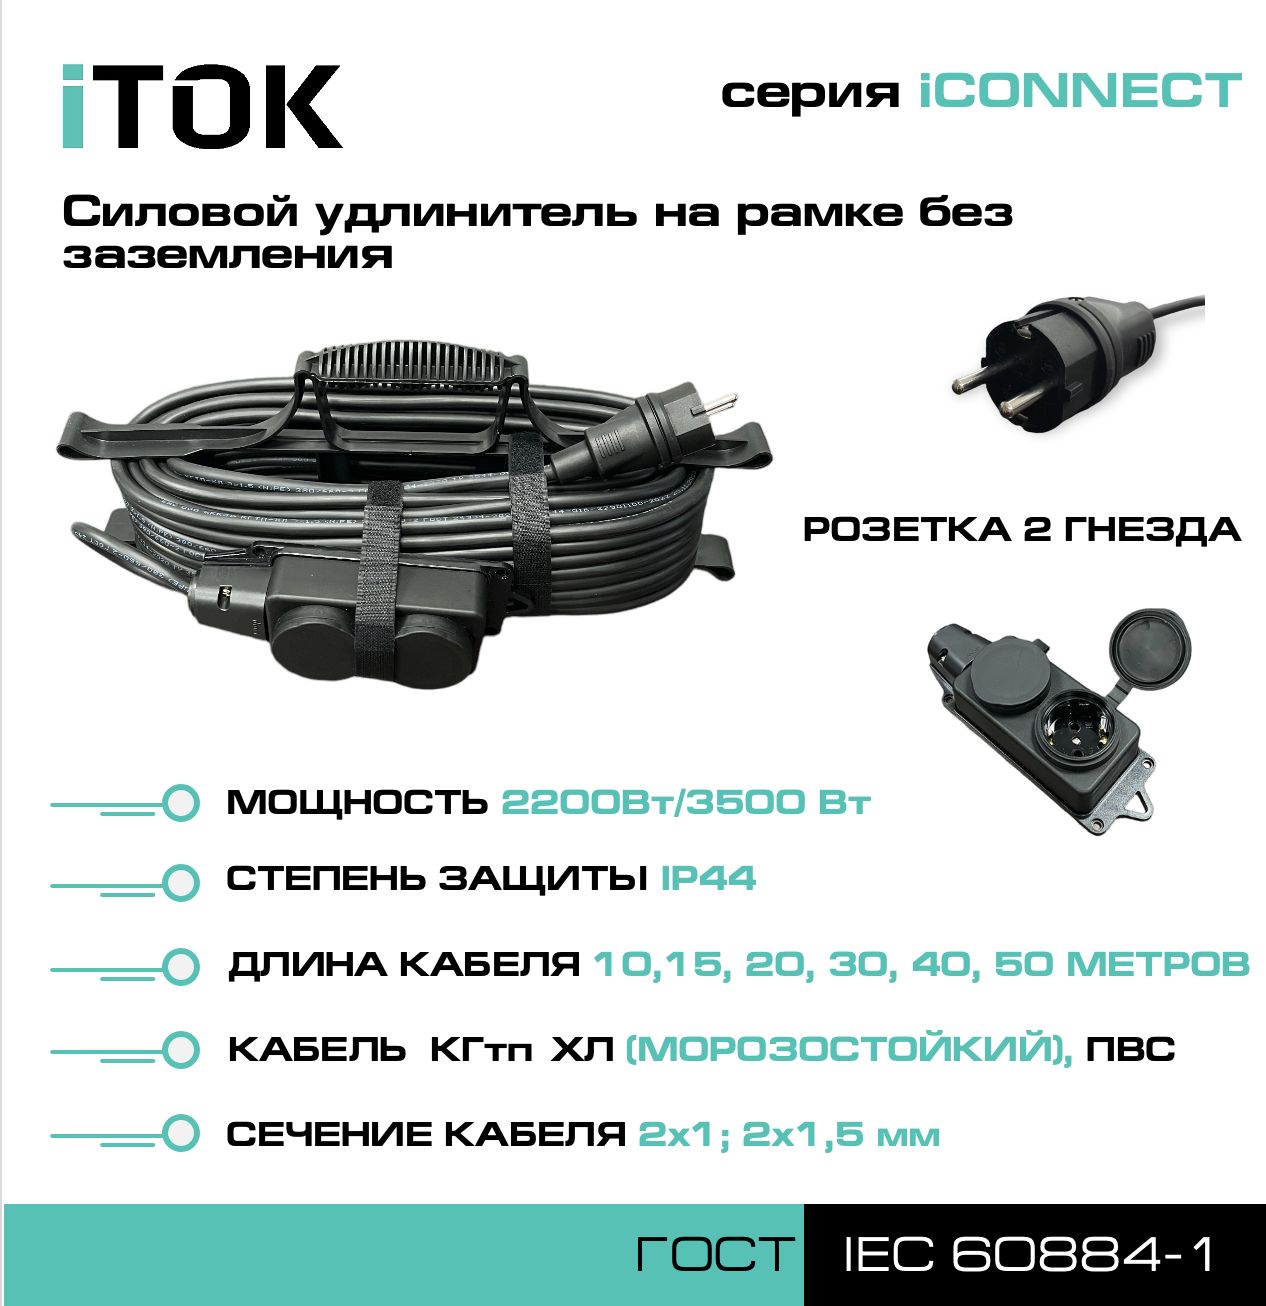 Удлинитель на рамке с заземлением серии iTOK iCONNECT ПВС 3х2,5 мм 2 гнезда IP44 20 м фигурный пазл в рамке